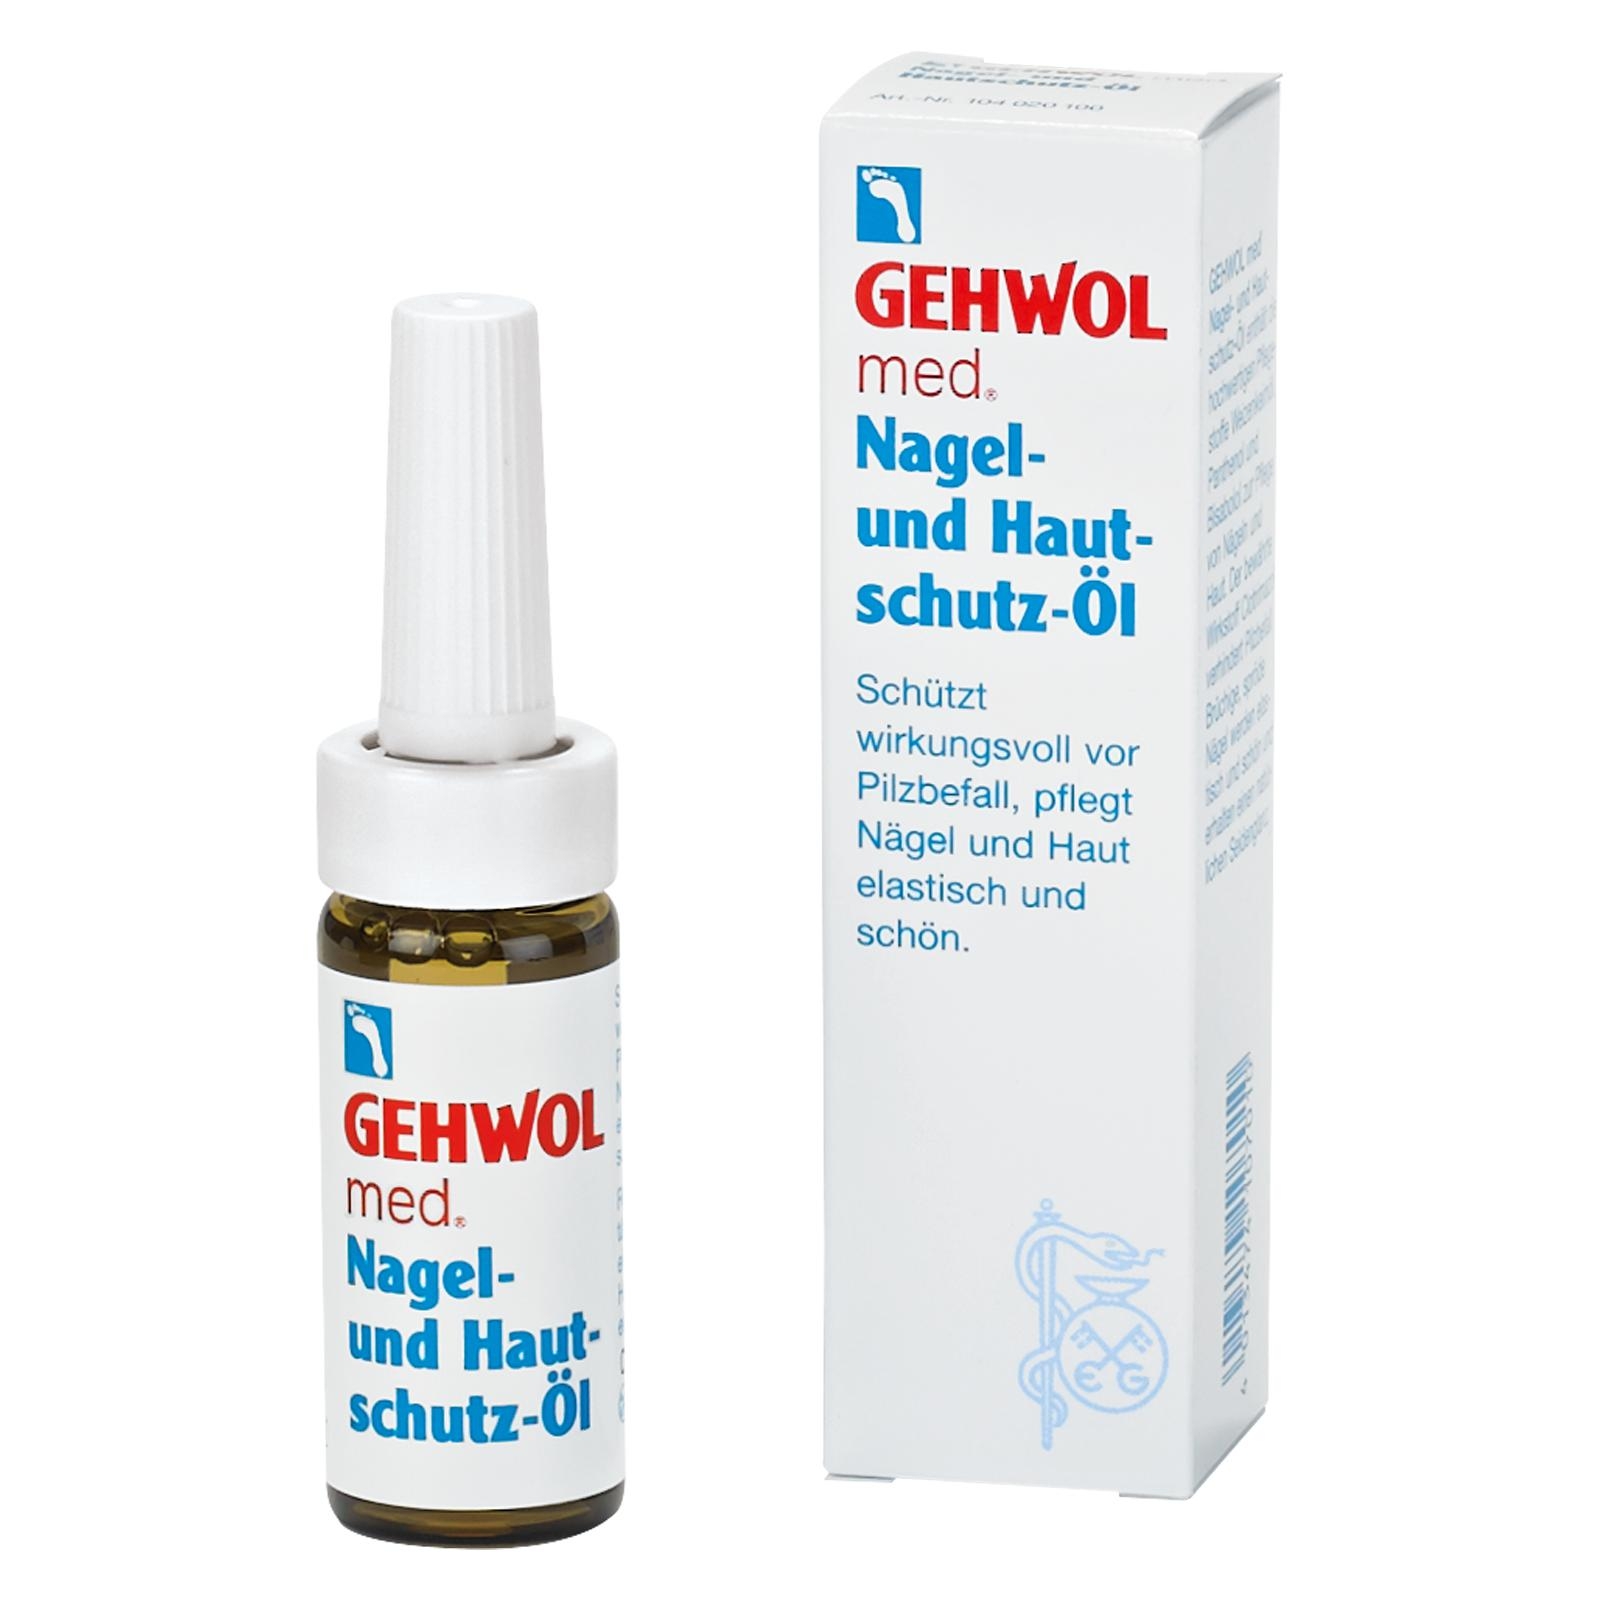 GEHWOL med Nagel- und Hautschutz-Öl 15 ml